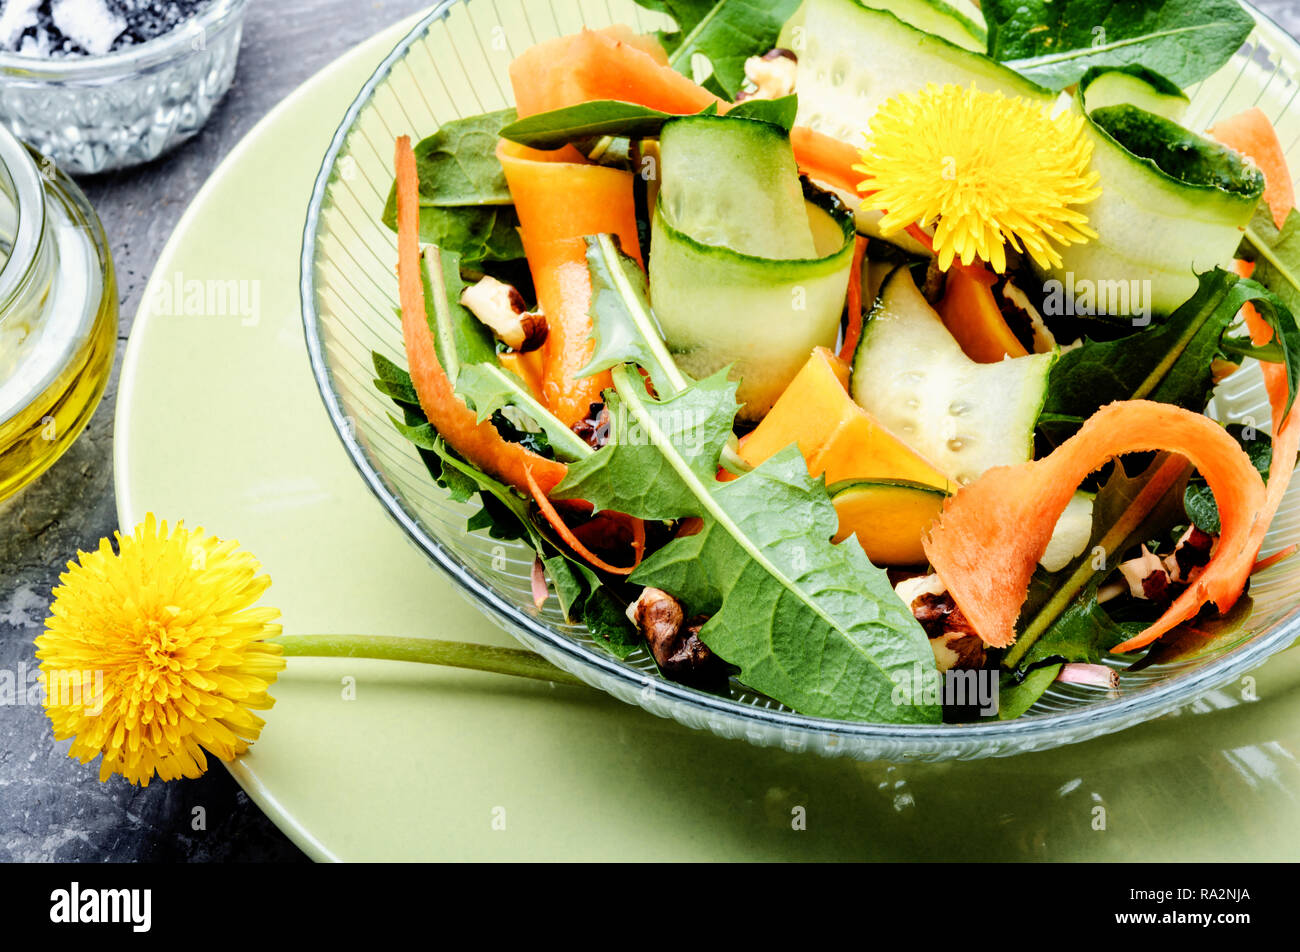 Salat mit Löwenzahn Blumen, Gurken, Rucola und Karotte. Frisches Gemüse  Salat Stockfotografie - Alamy